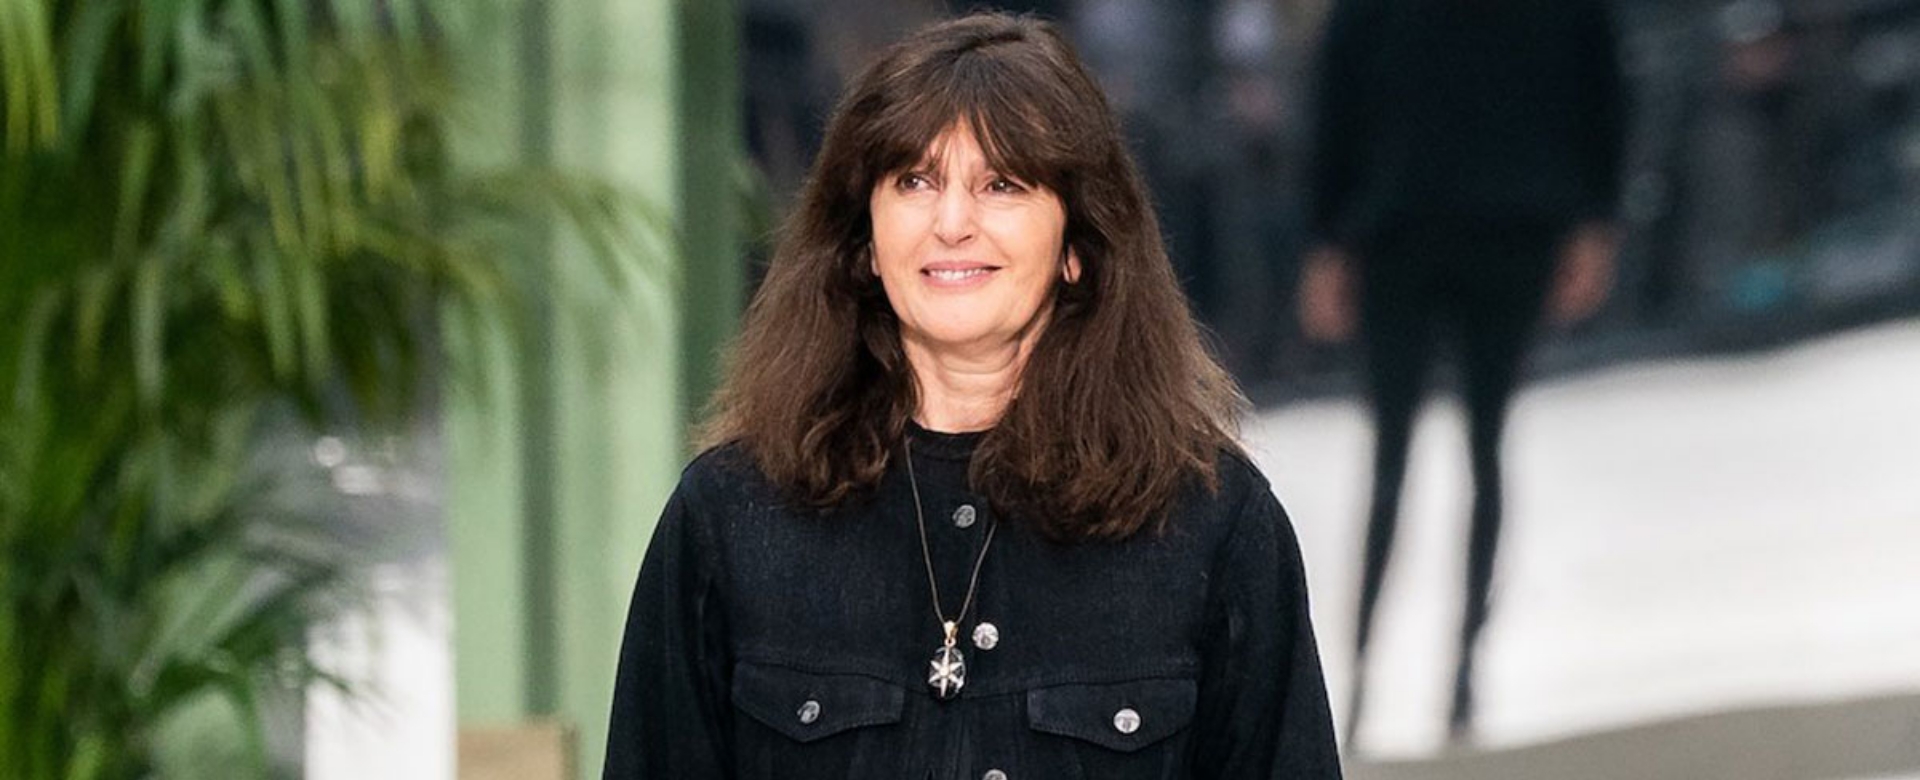 Giám đốc Sáng tạo Virginie Viard nói lời chia tay CHANEL sau 30 năm